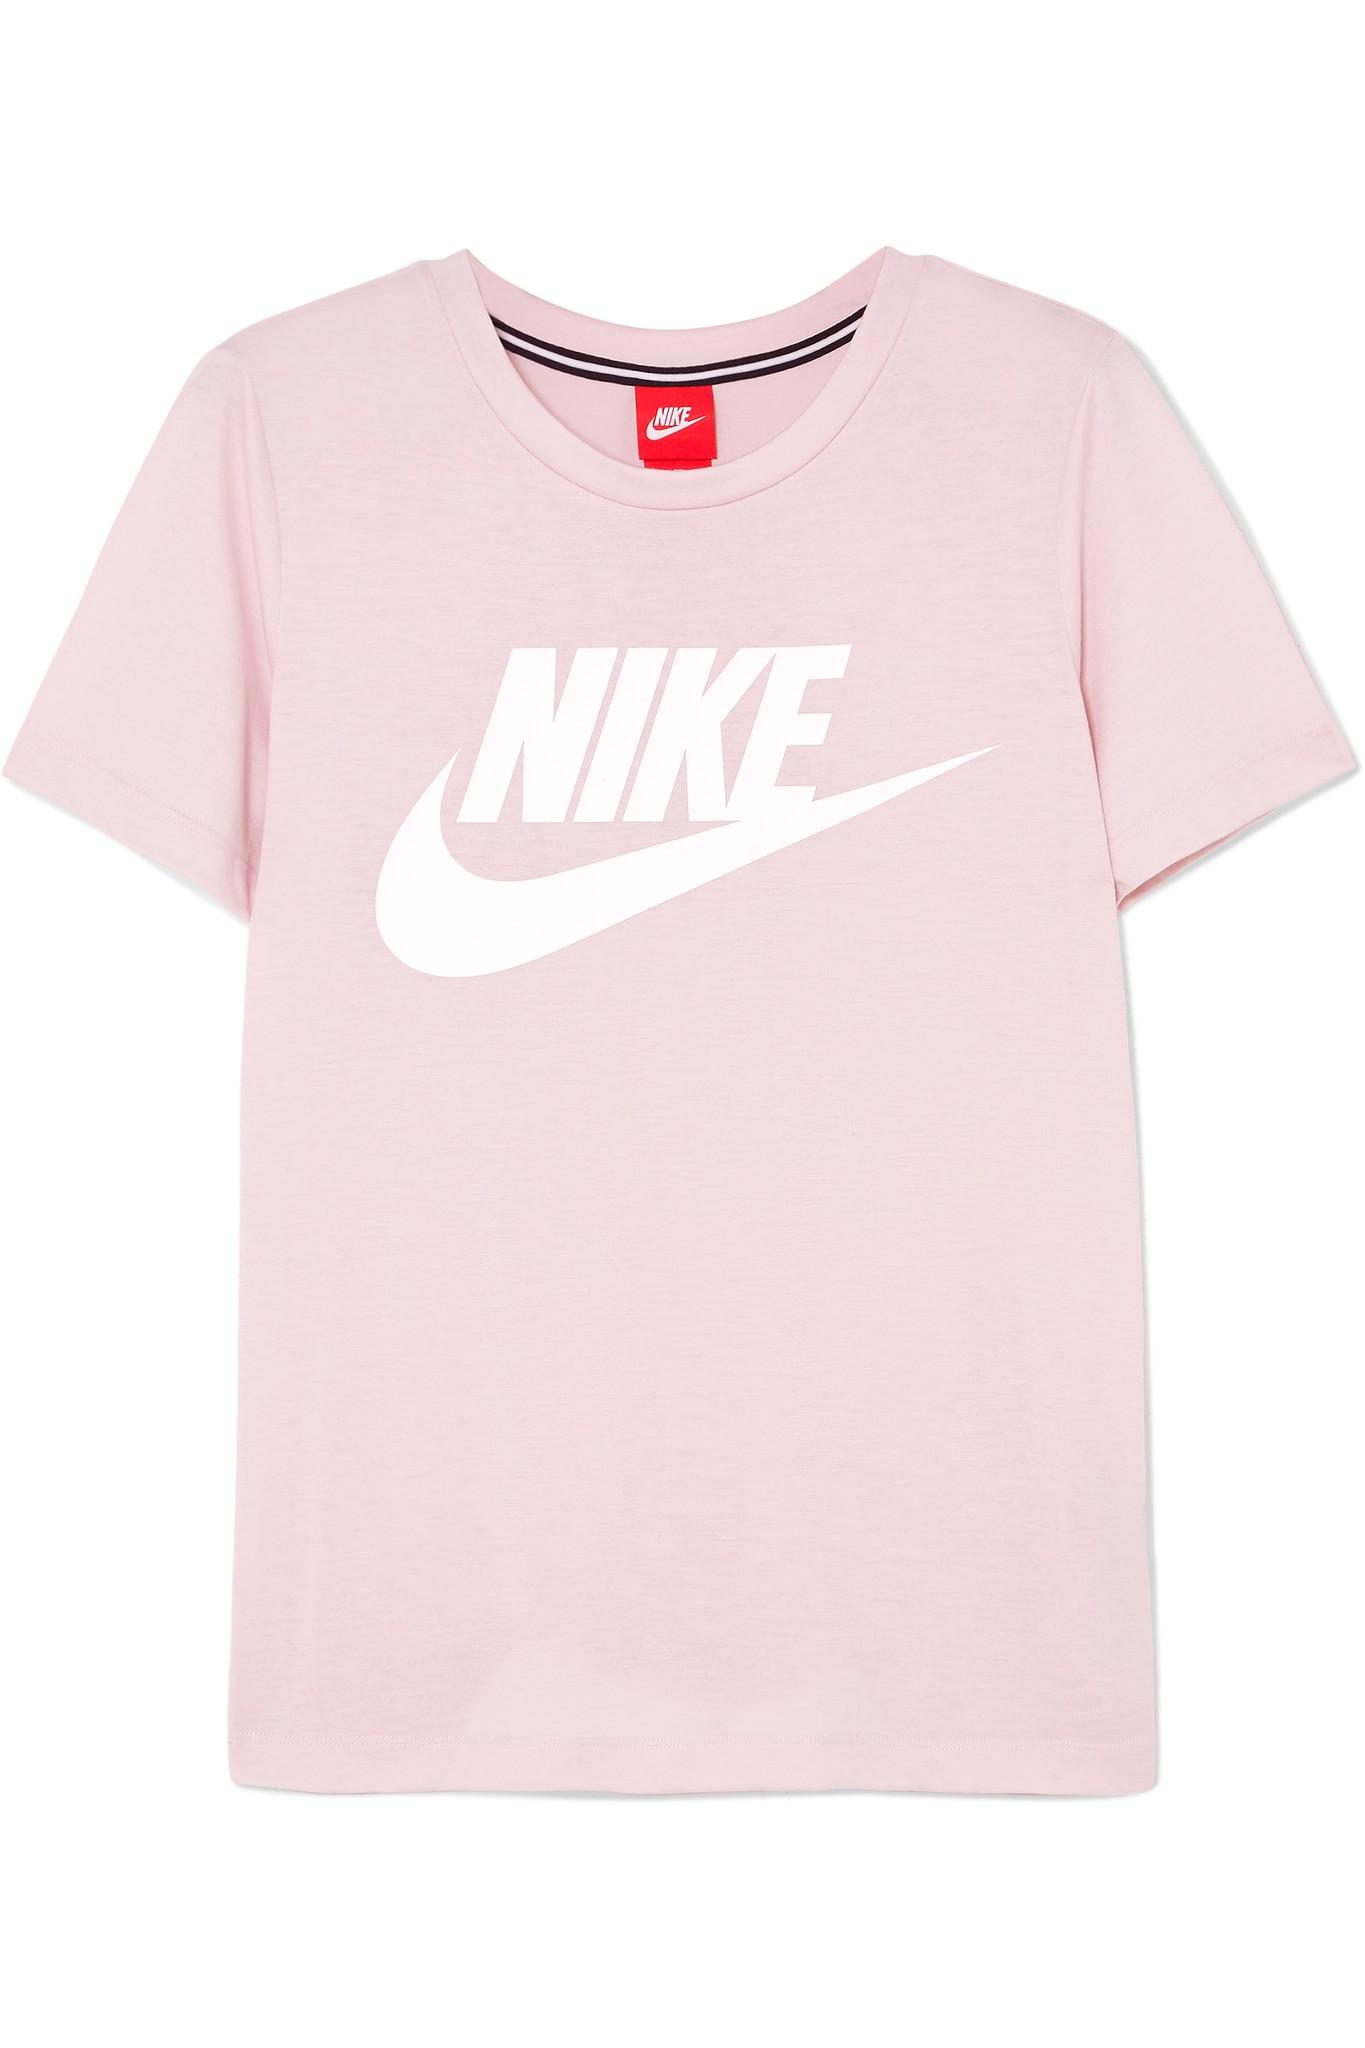 pink nike t shirt